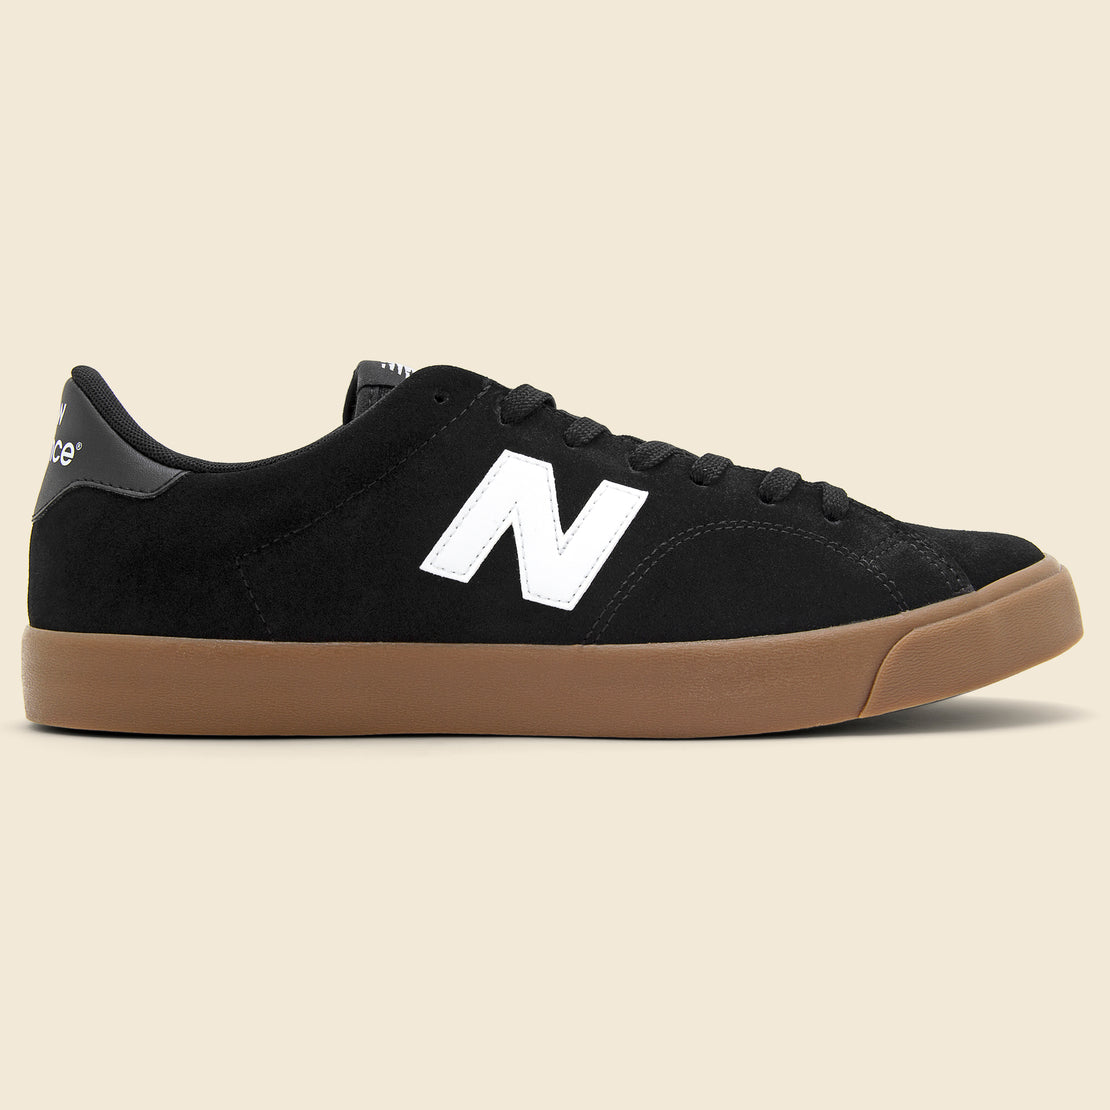 New Balance AM210 Sneaker - Black/Gum